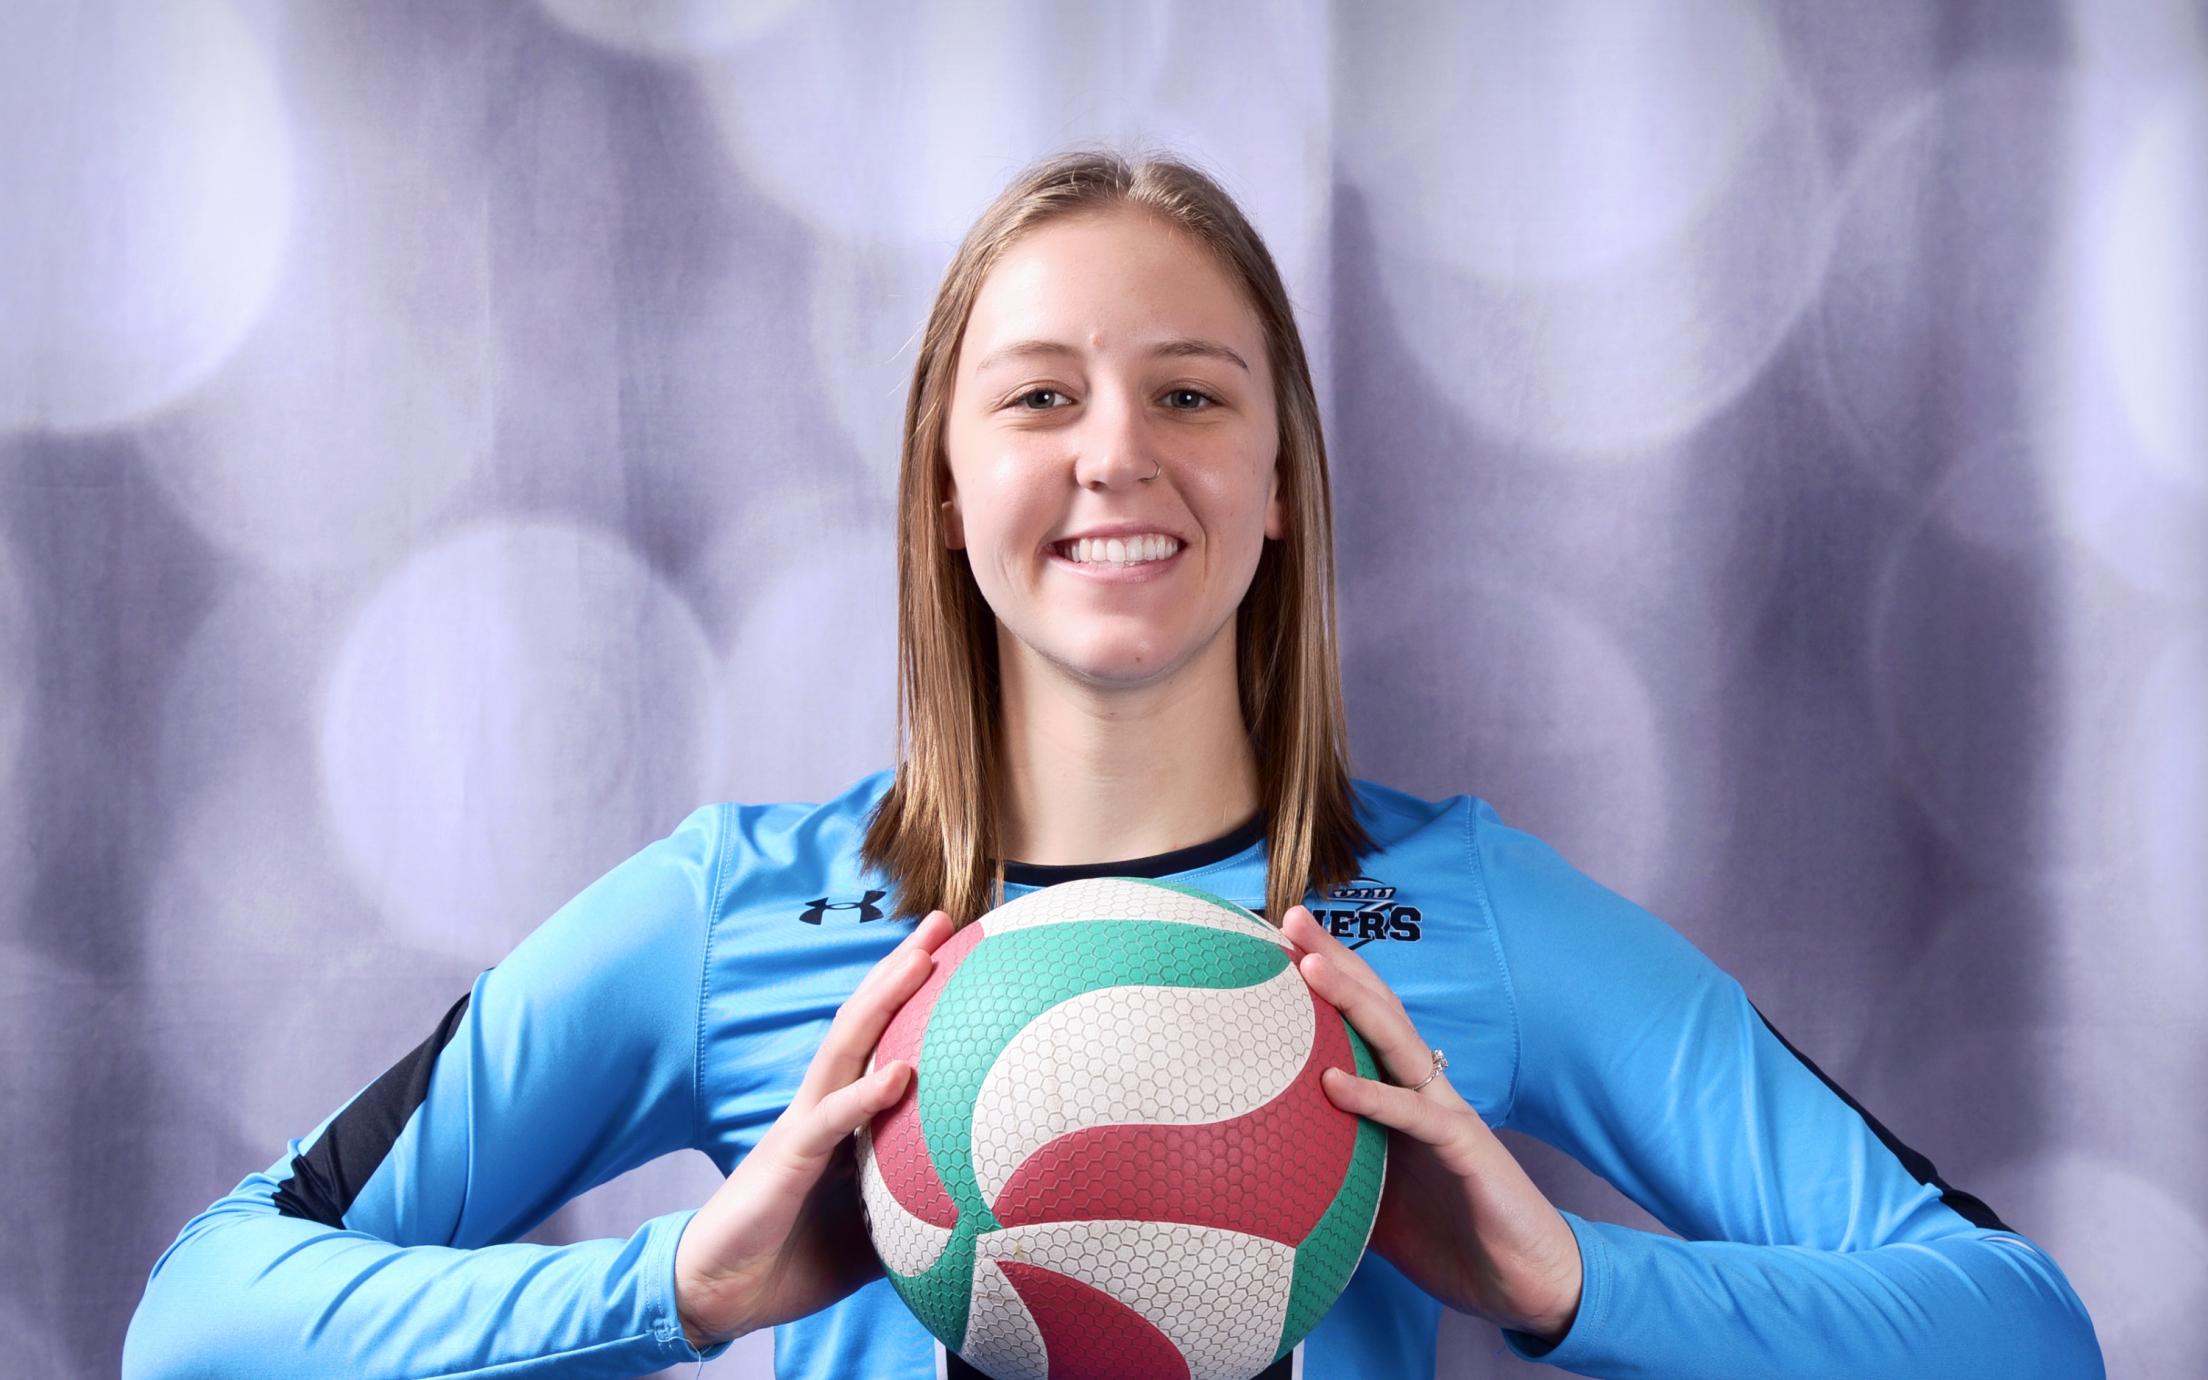 Danielle Groenendijk holding a volleyball.